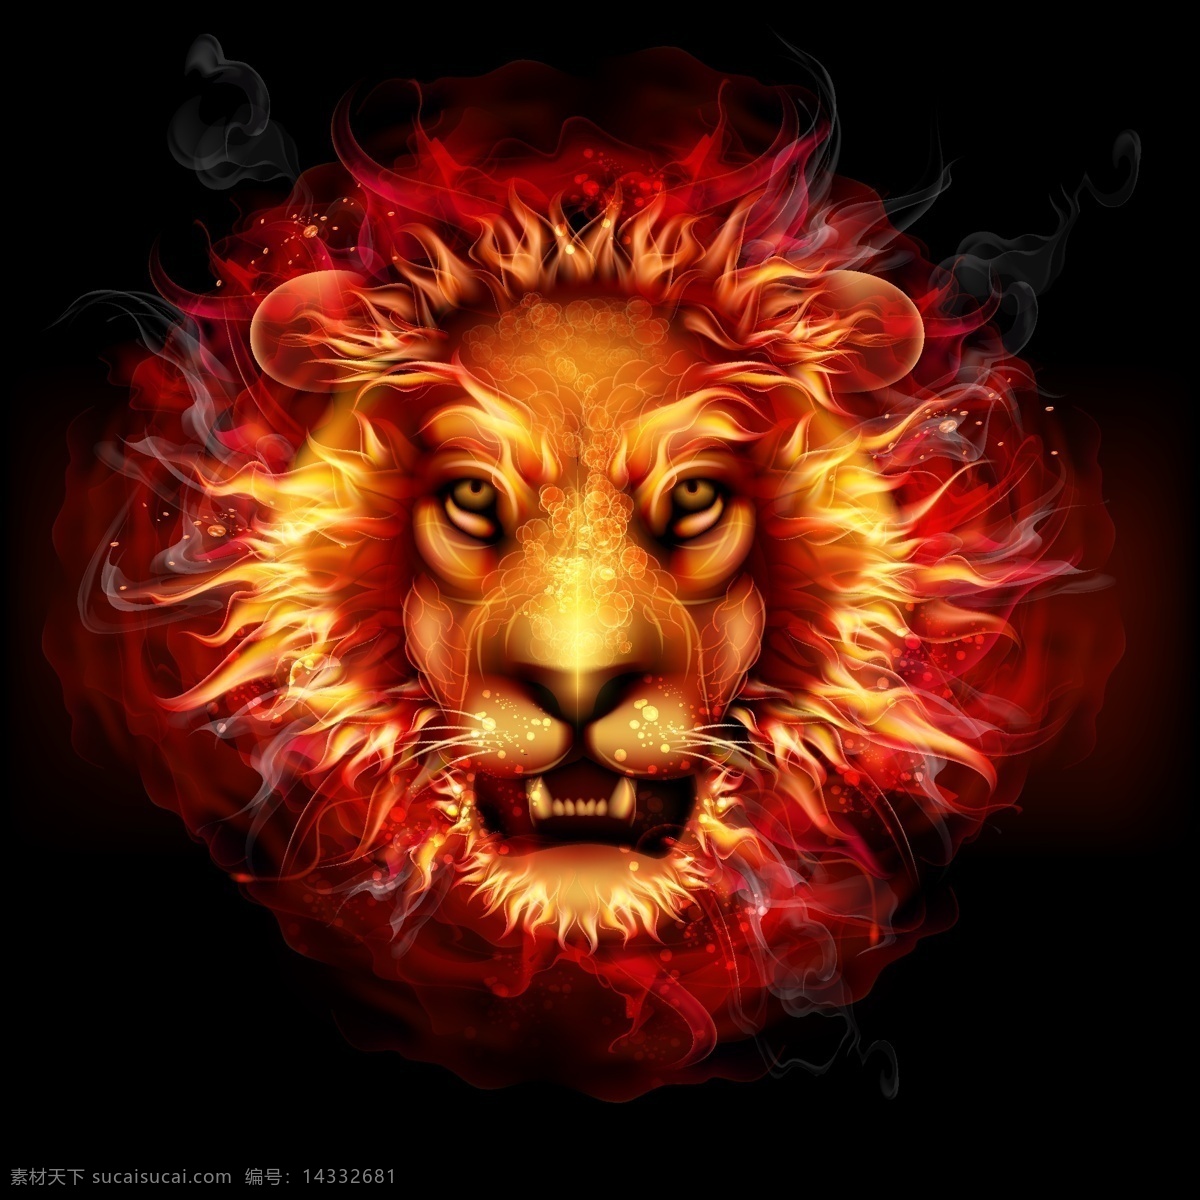 矢量狮子 卡通狮子 手绘狮子 狮子插画 狮子头 狮子头像 火红狮子 红色狮子 动物 生物世界 野生动物